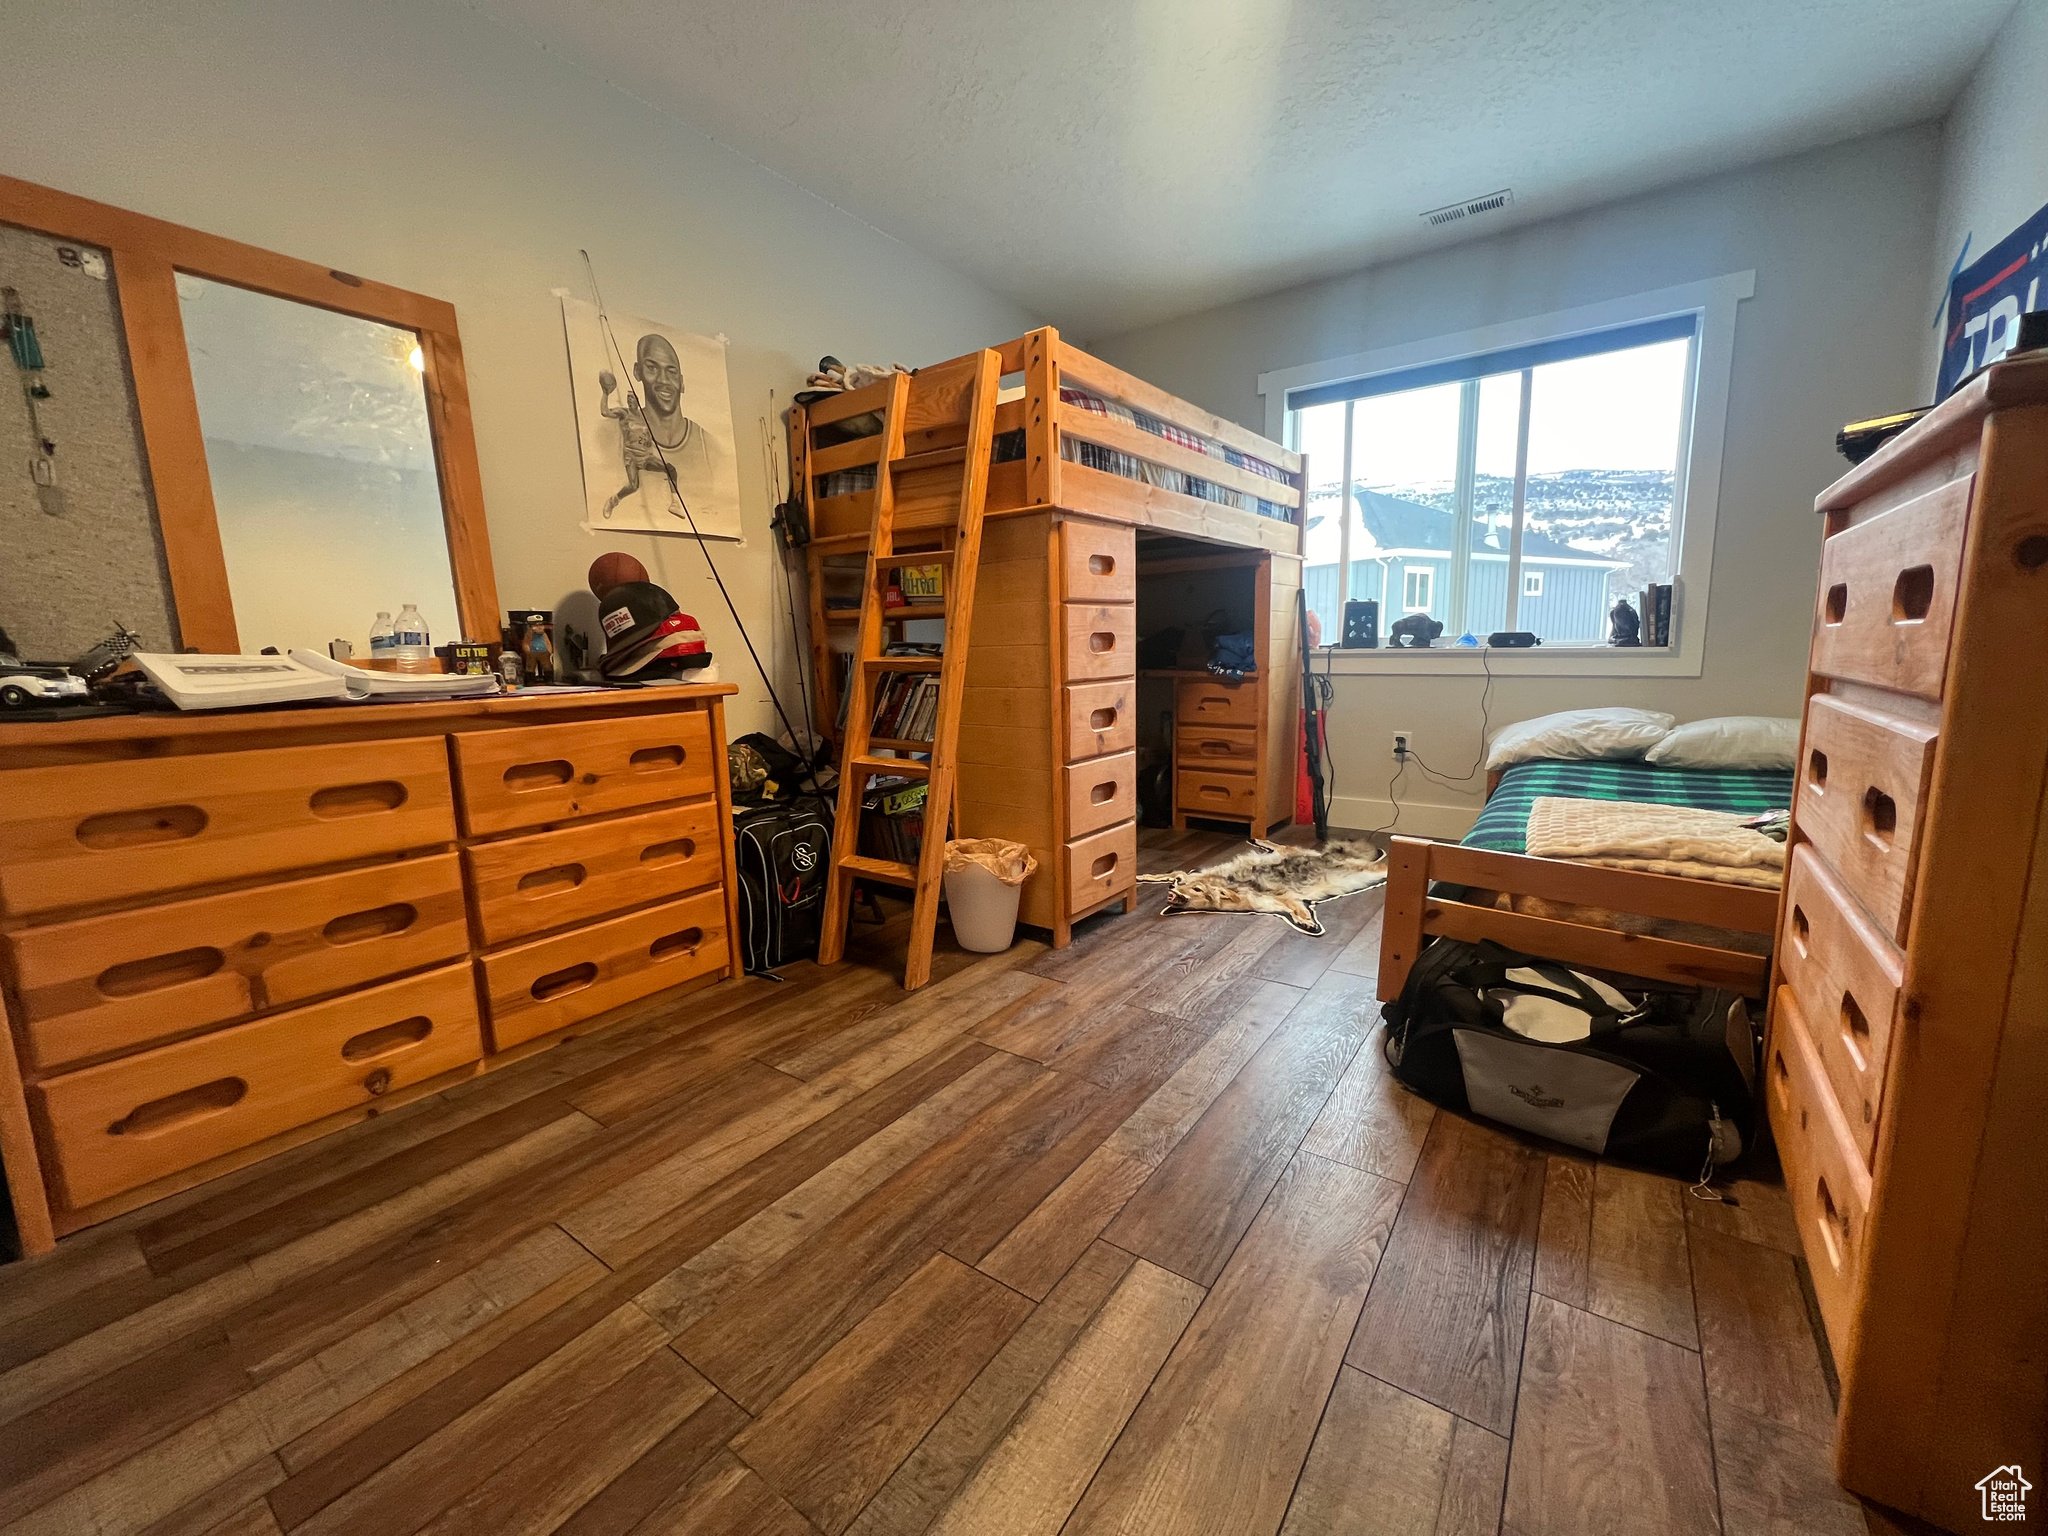 Bedroom with dark wood-type flooring